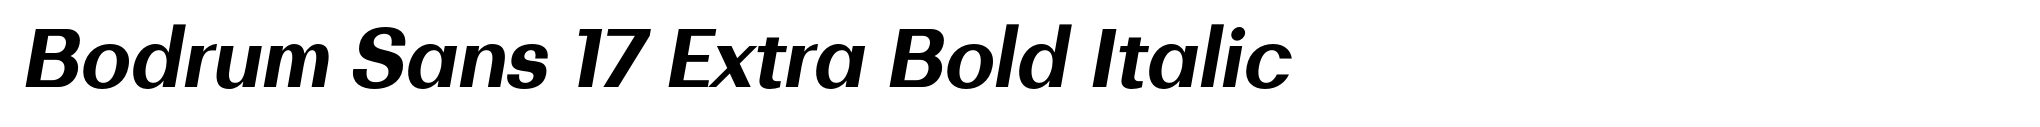 Bodrum Sans 17 Extra Bold Italic image